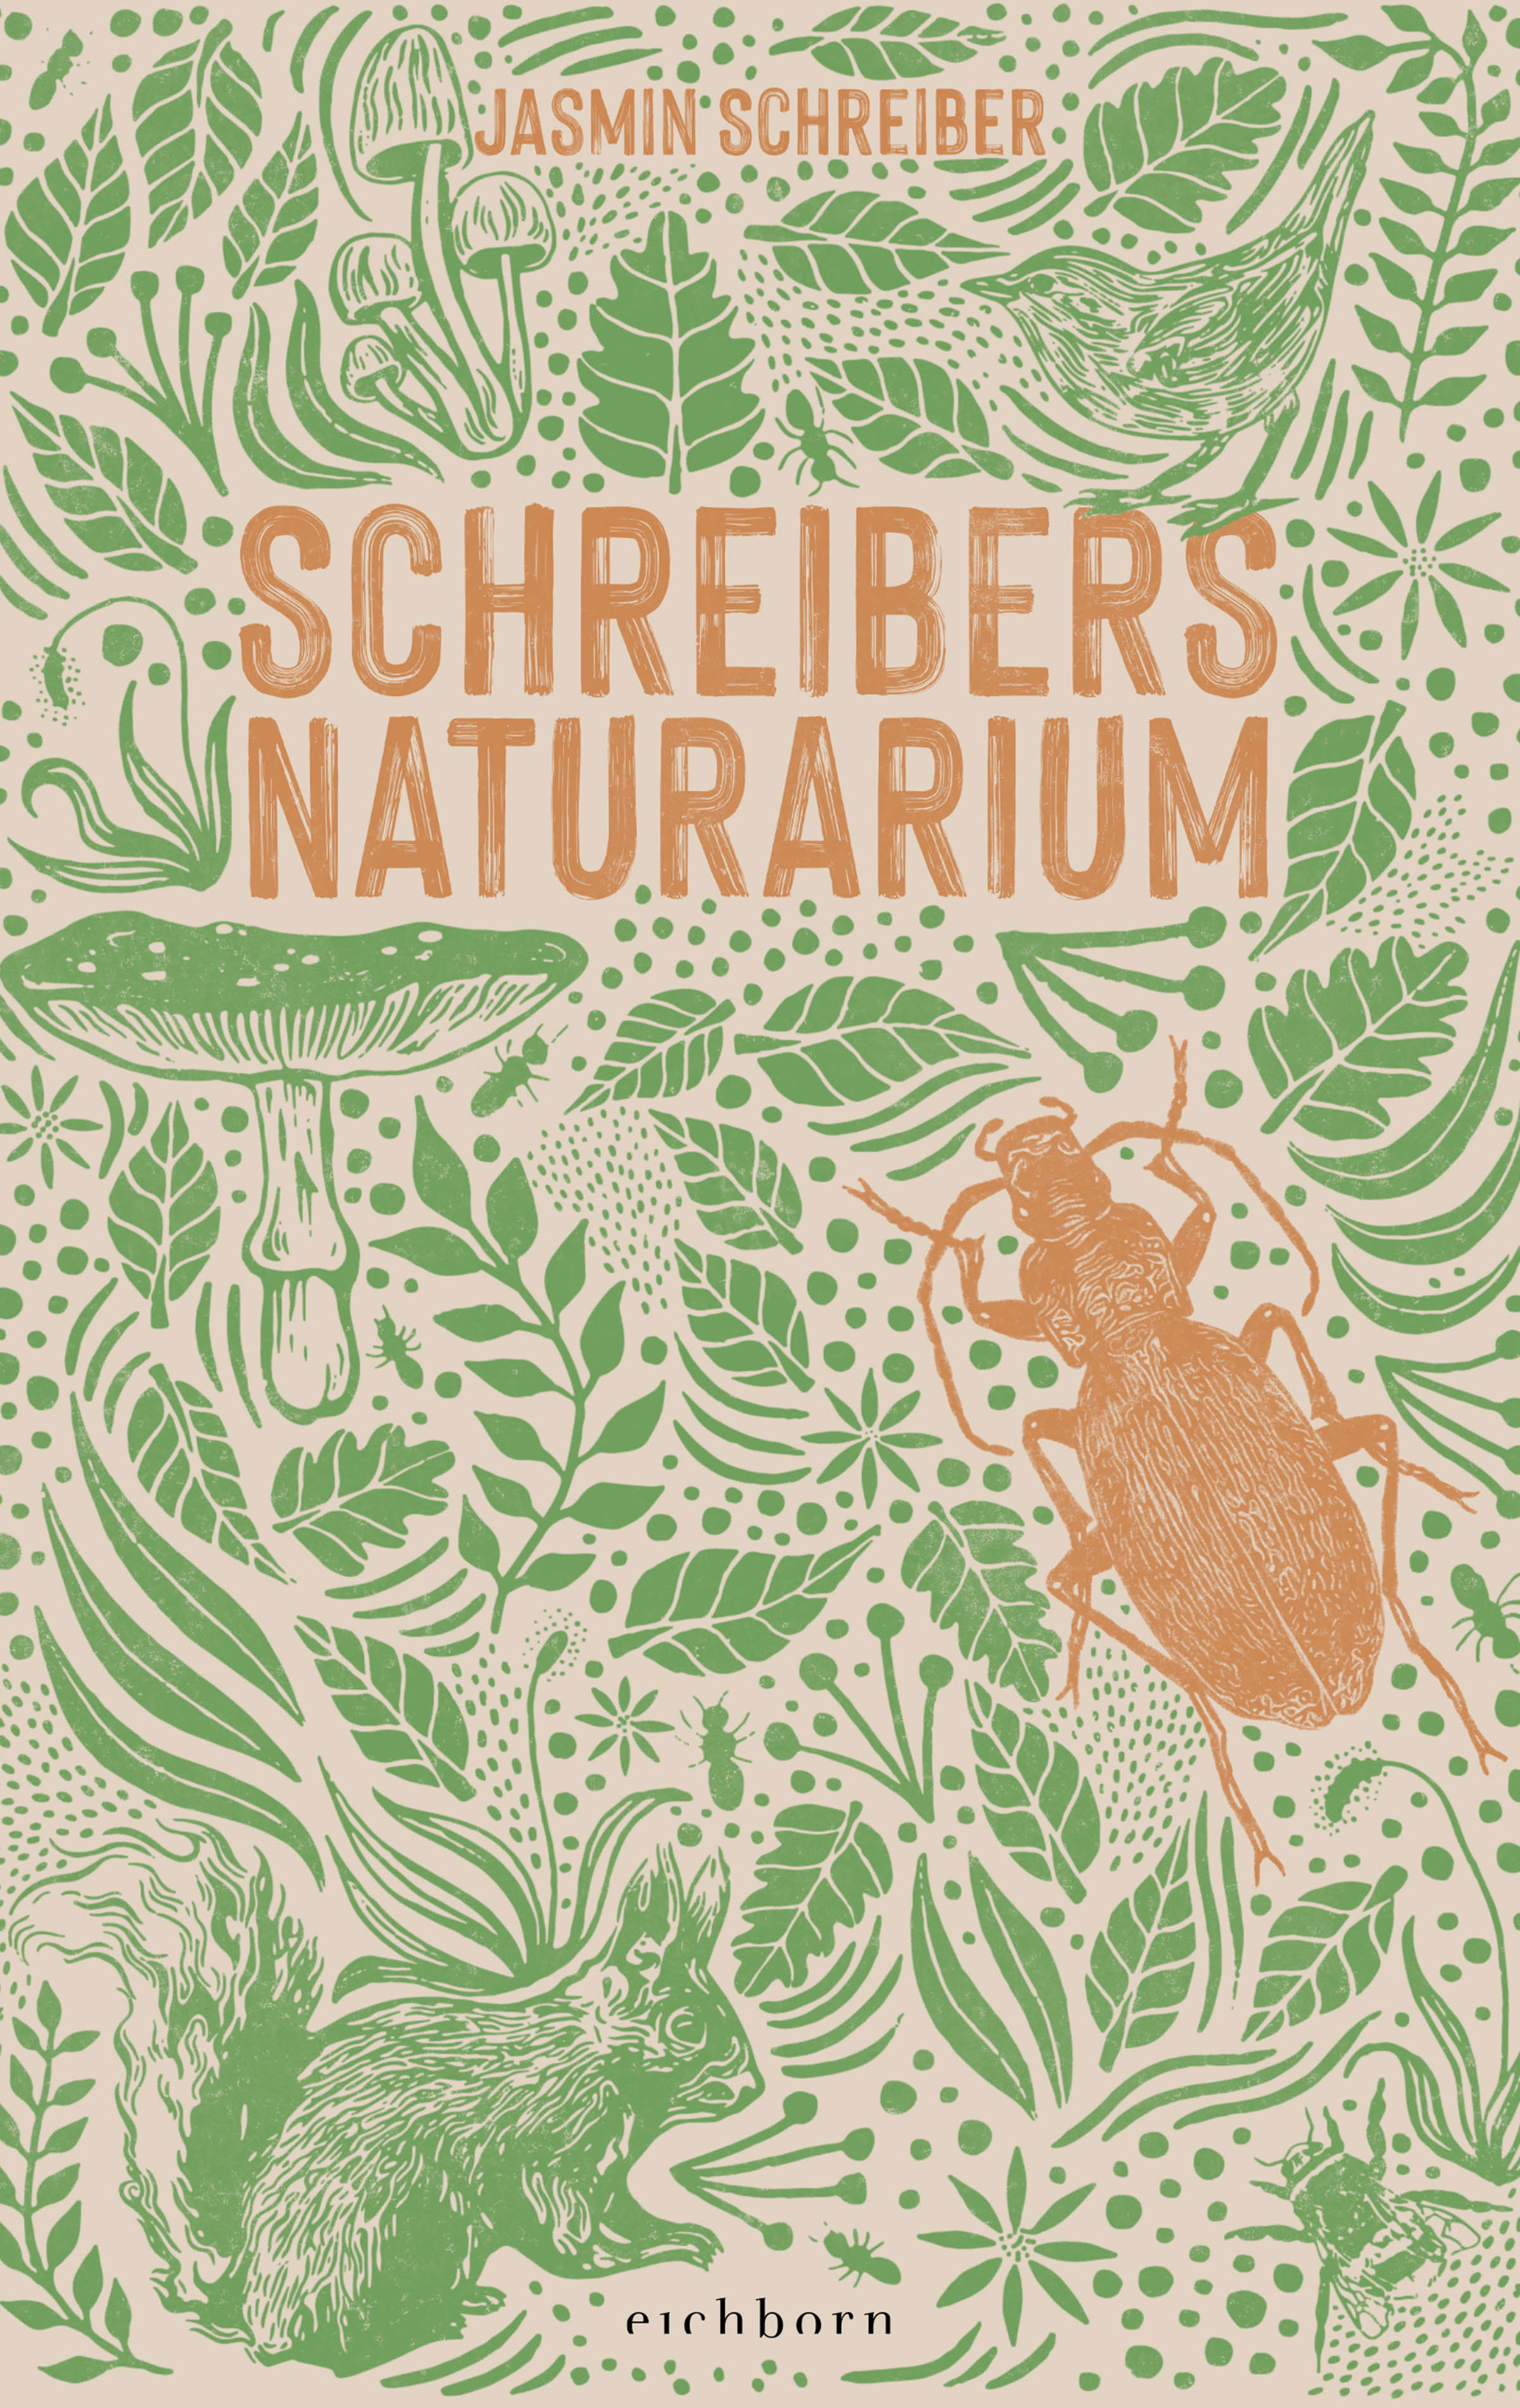 Schreibers Naturarium (Hardcover, Deutsch language, Eichborn Verlag)